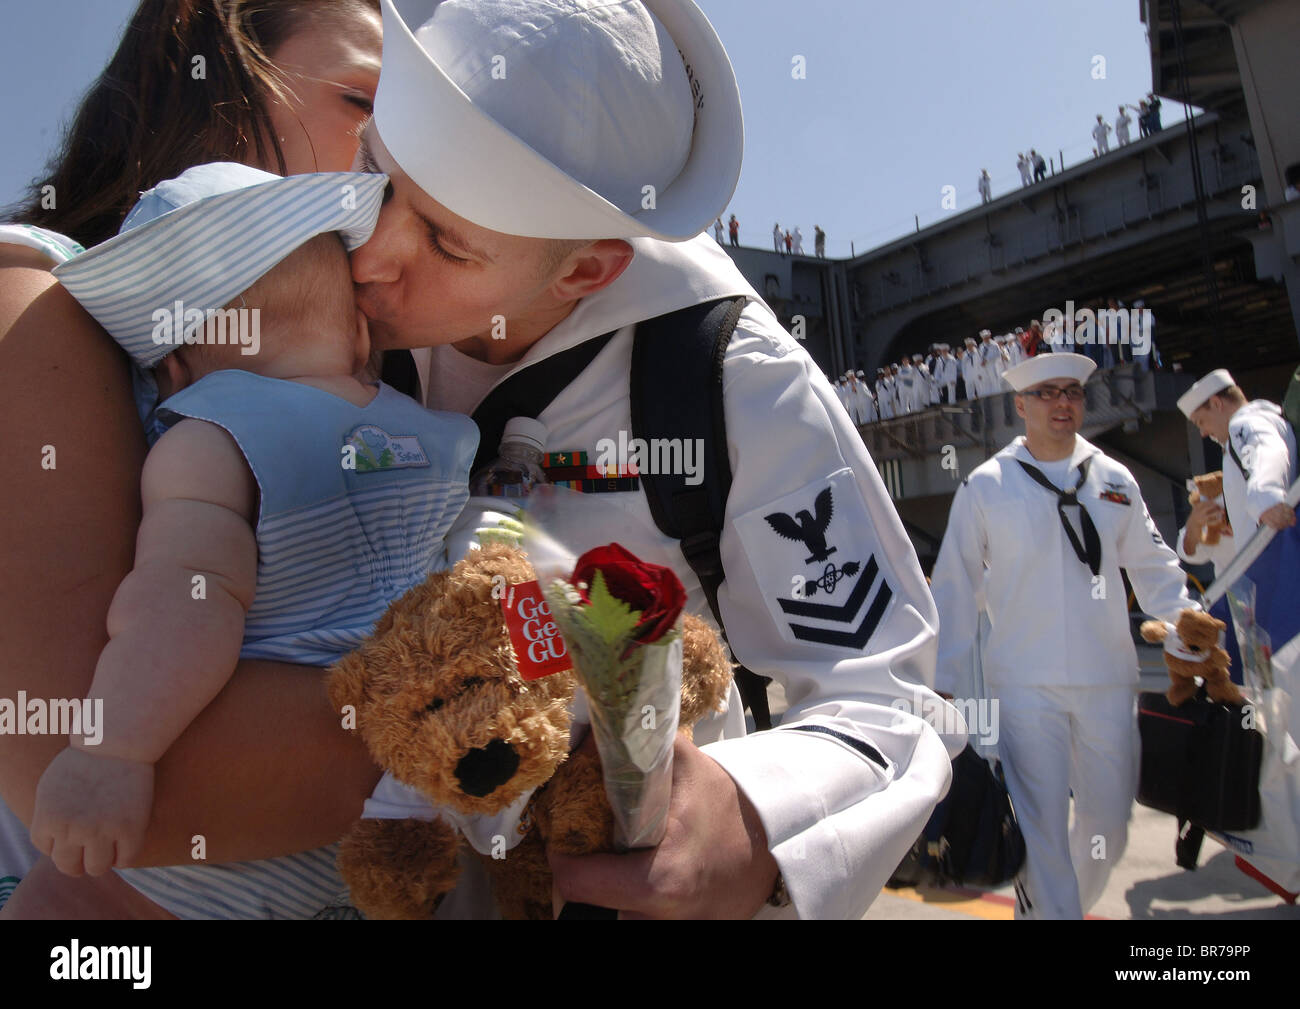 Navy whites immagini e fotografie stock ad alta risoluzione - Alamy